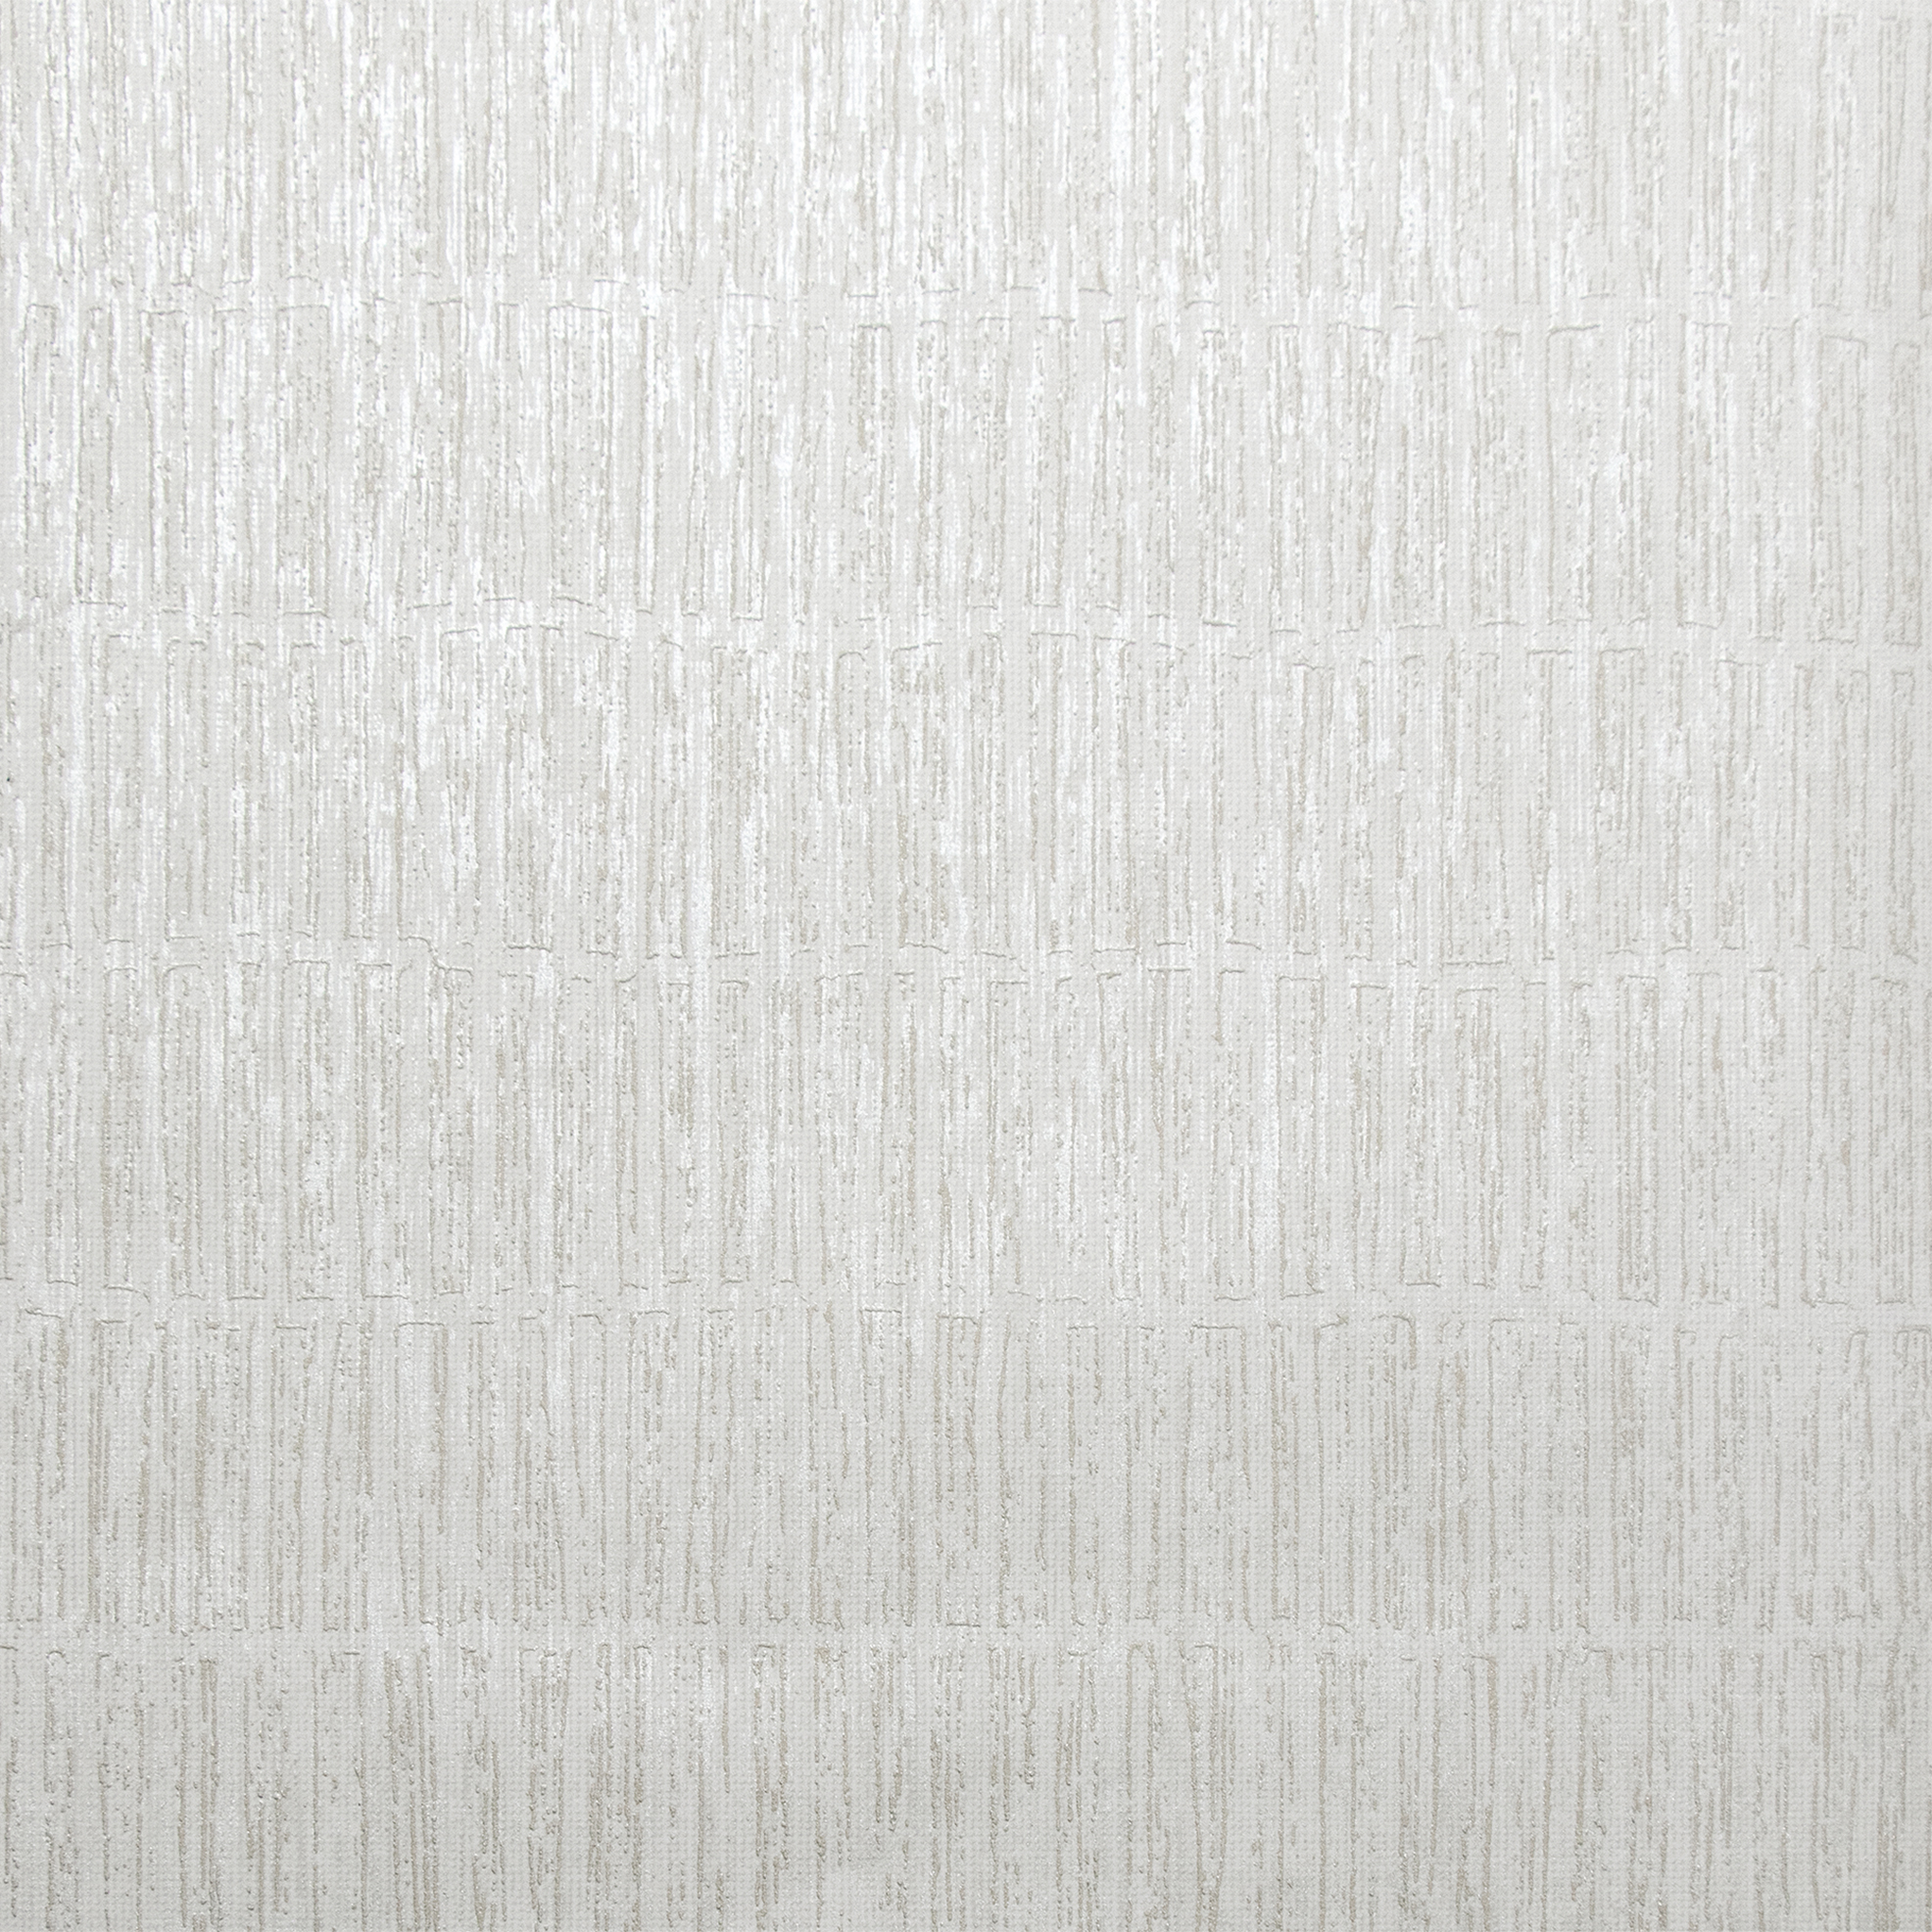 2076-16-11 3 Rollen hochwertige Vliestapeten Design-Panel Tapete 0,70m x 3,00m 